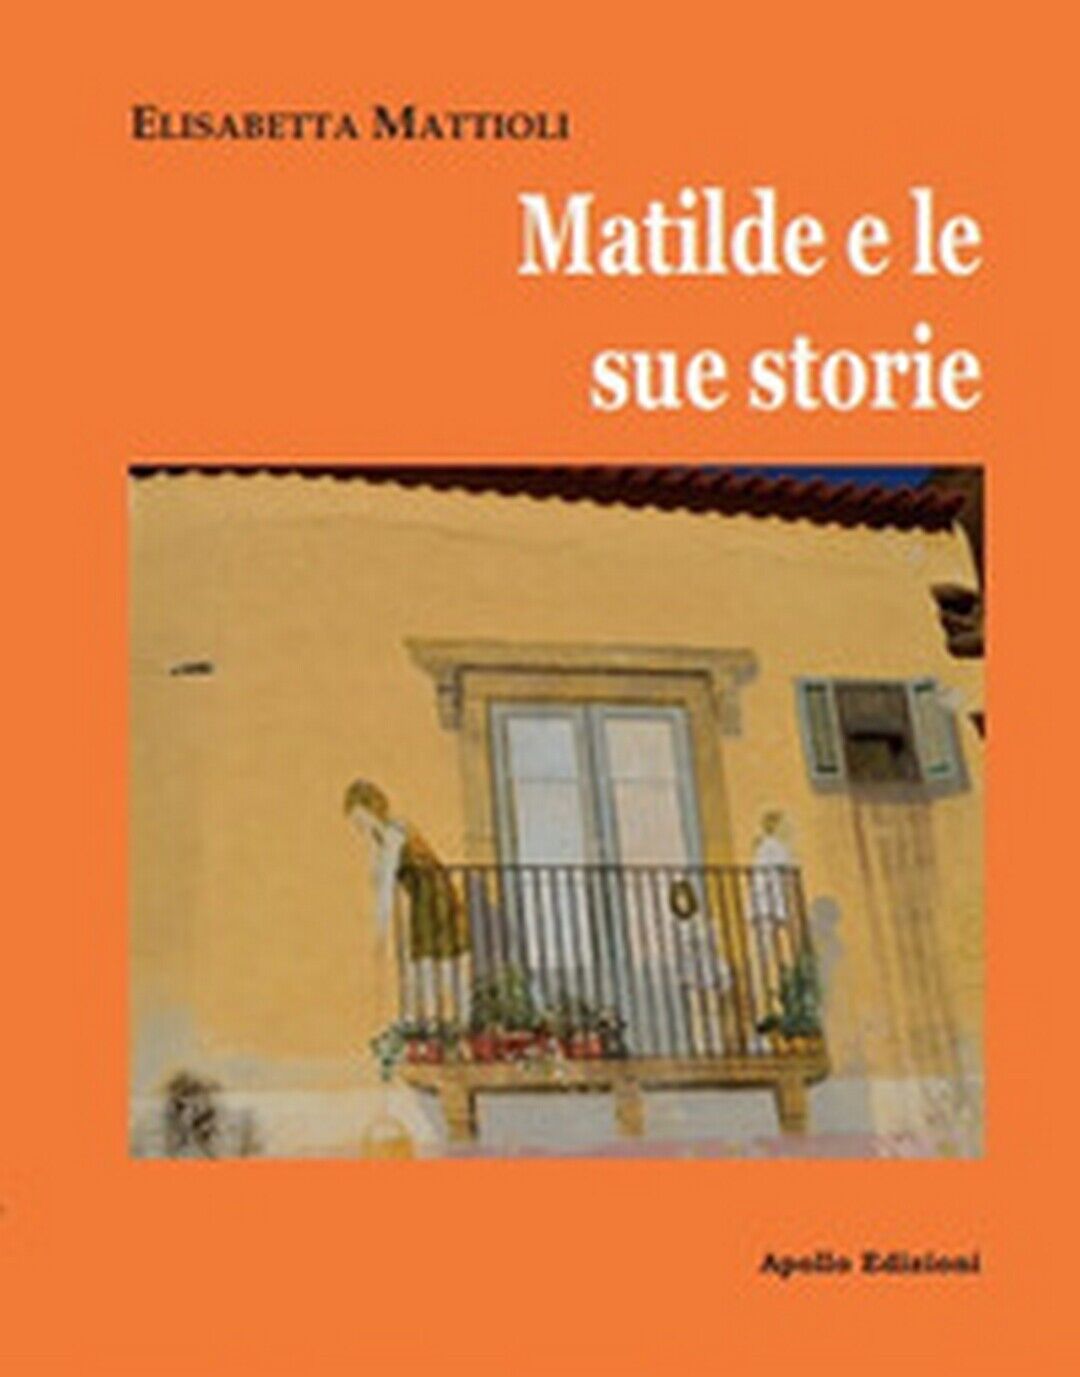 Matilde e le sue storie  di Elisabetta Mattioli,  2019,  Apollo Edizioni